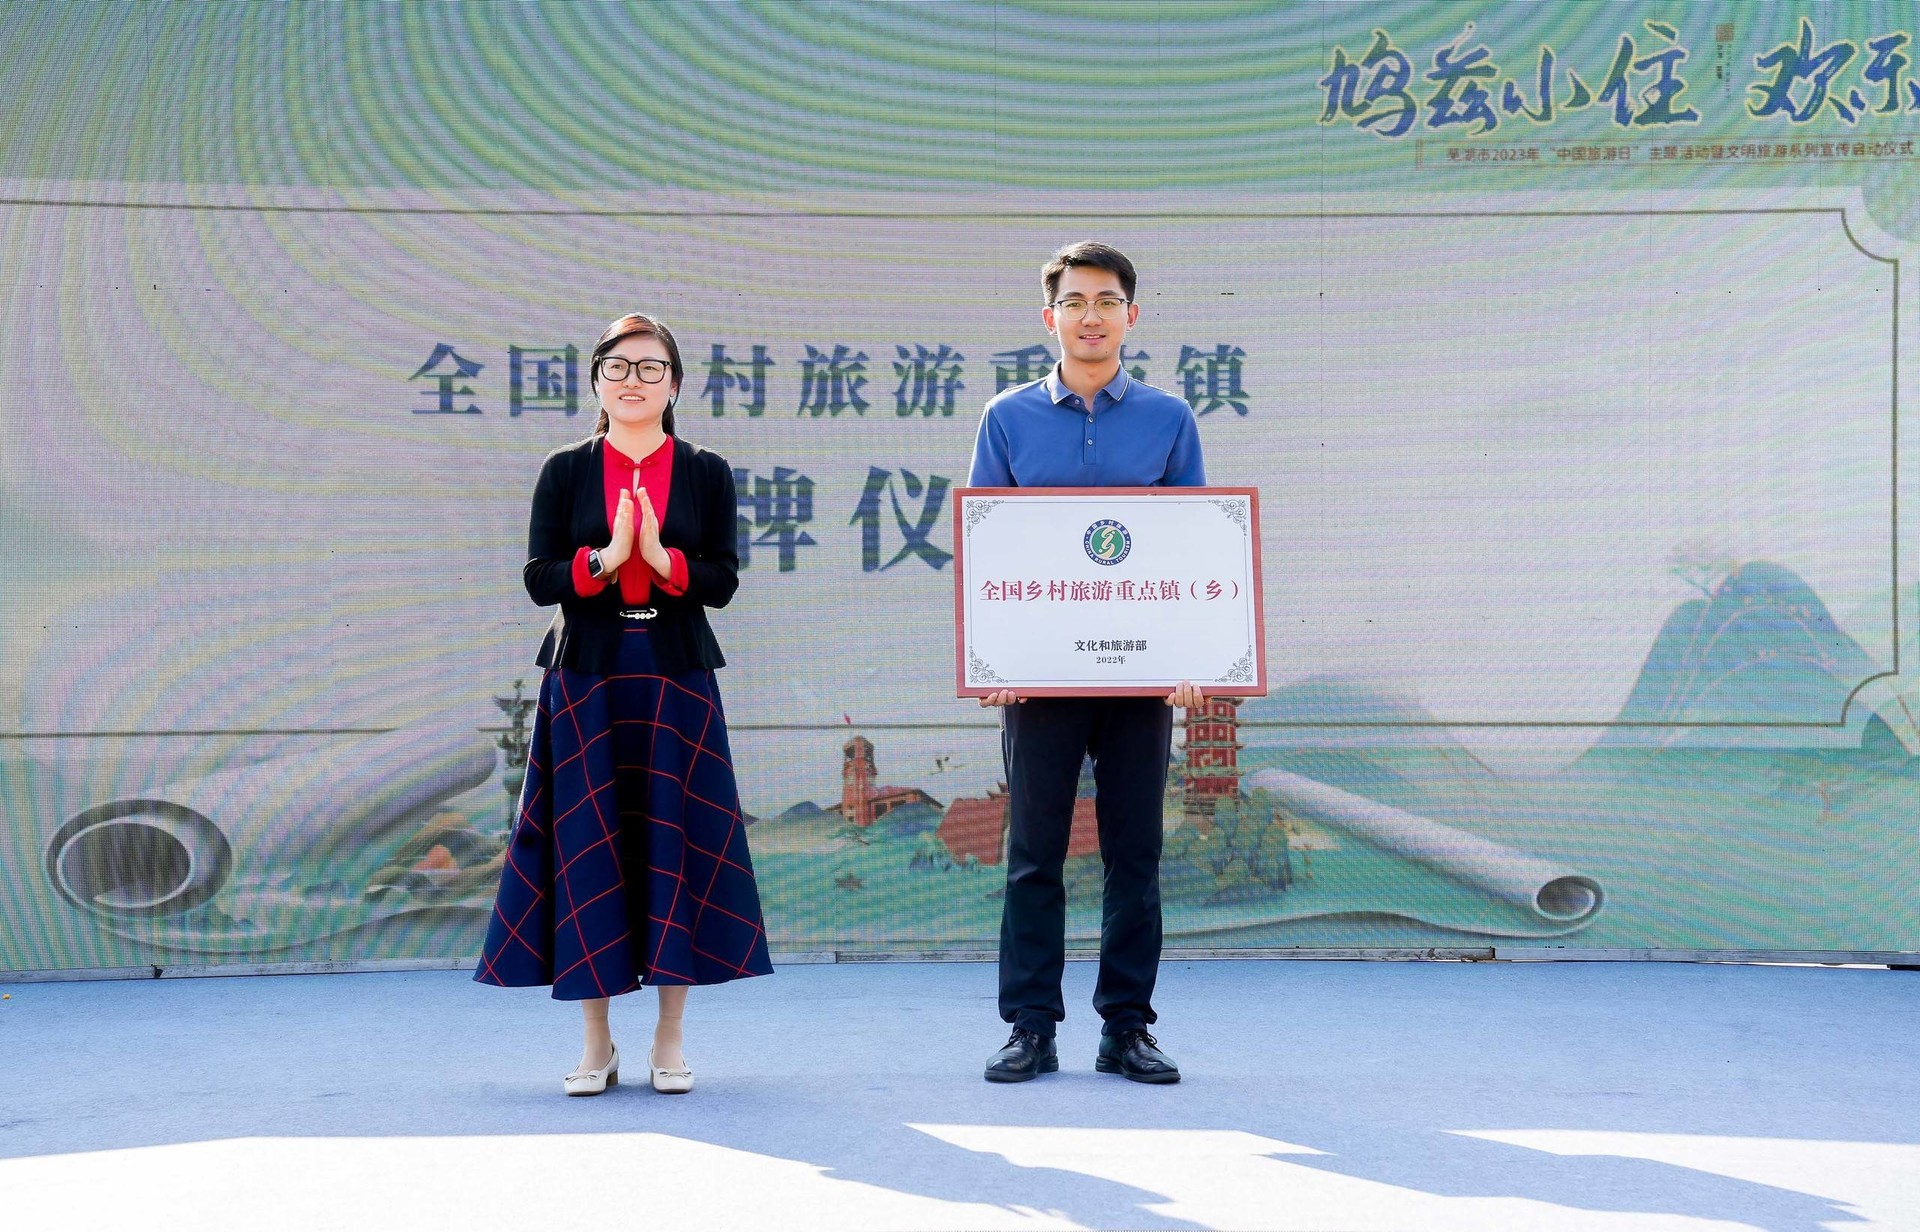 鳩茲小住歡樂行 「5·19中國旅遊日」蕪湖市主題活動開幕